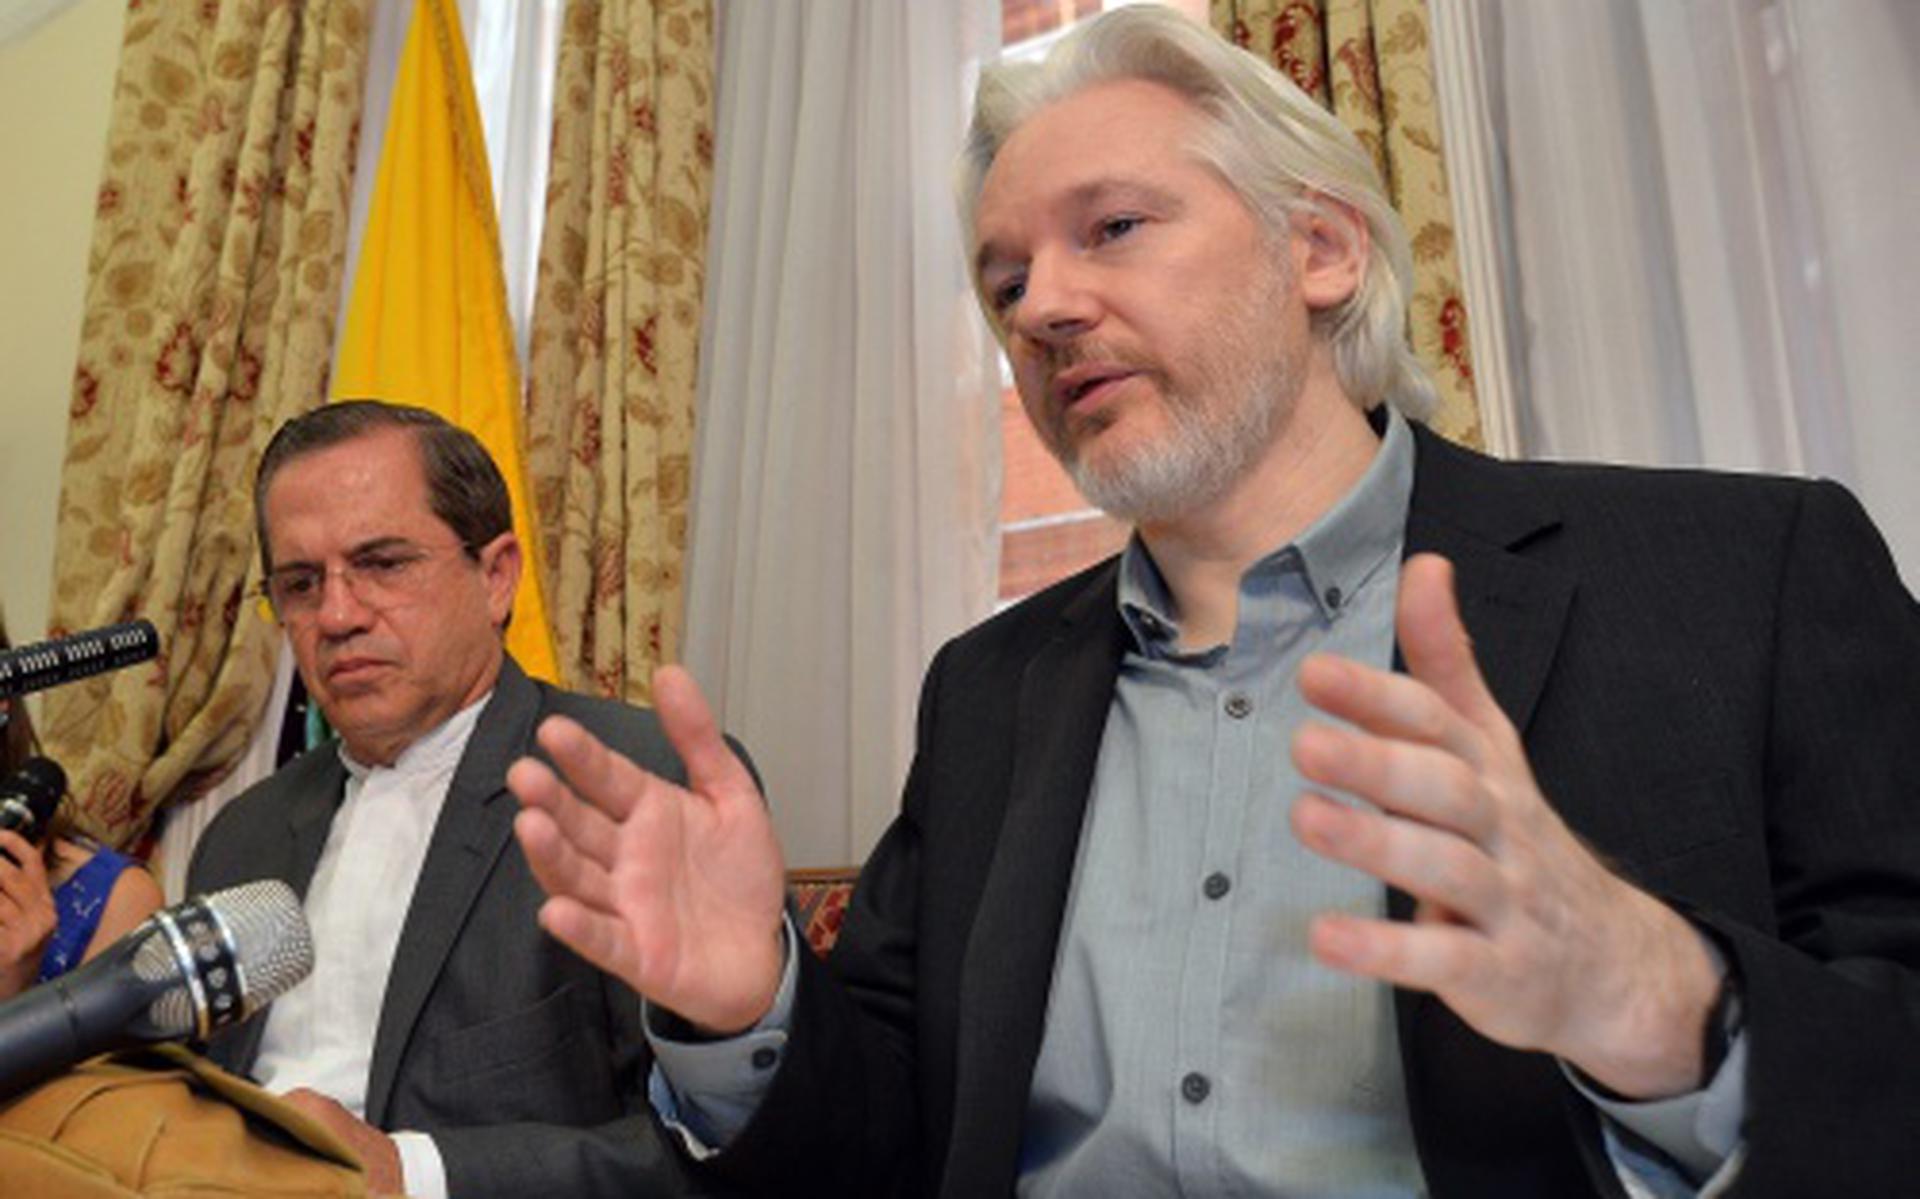 'VN: Assange zit zonder rechtsgrond vast'